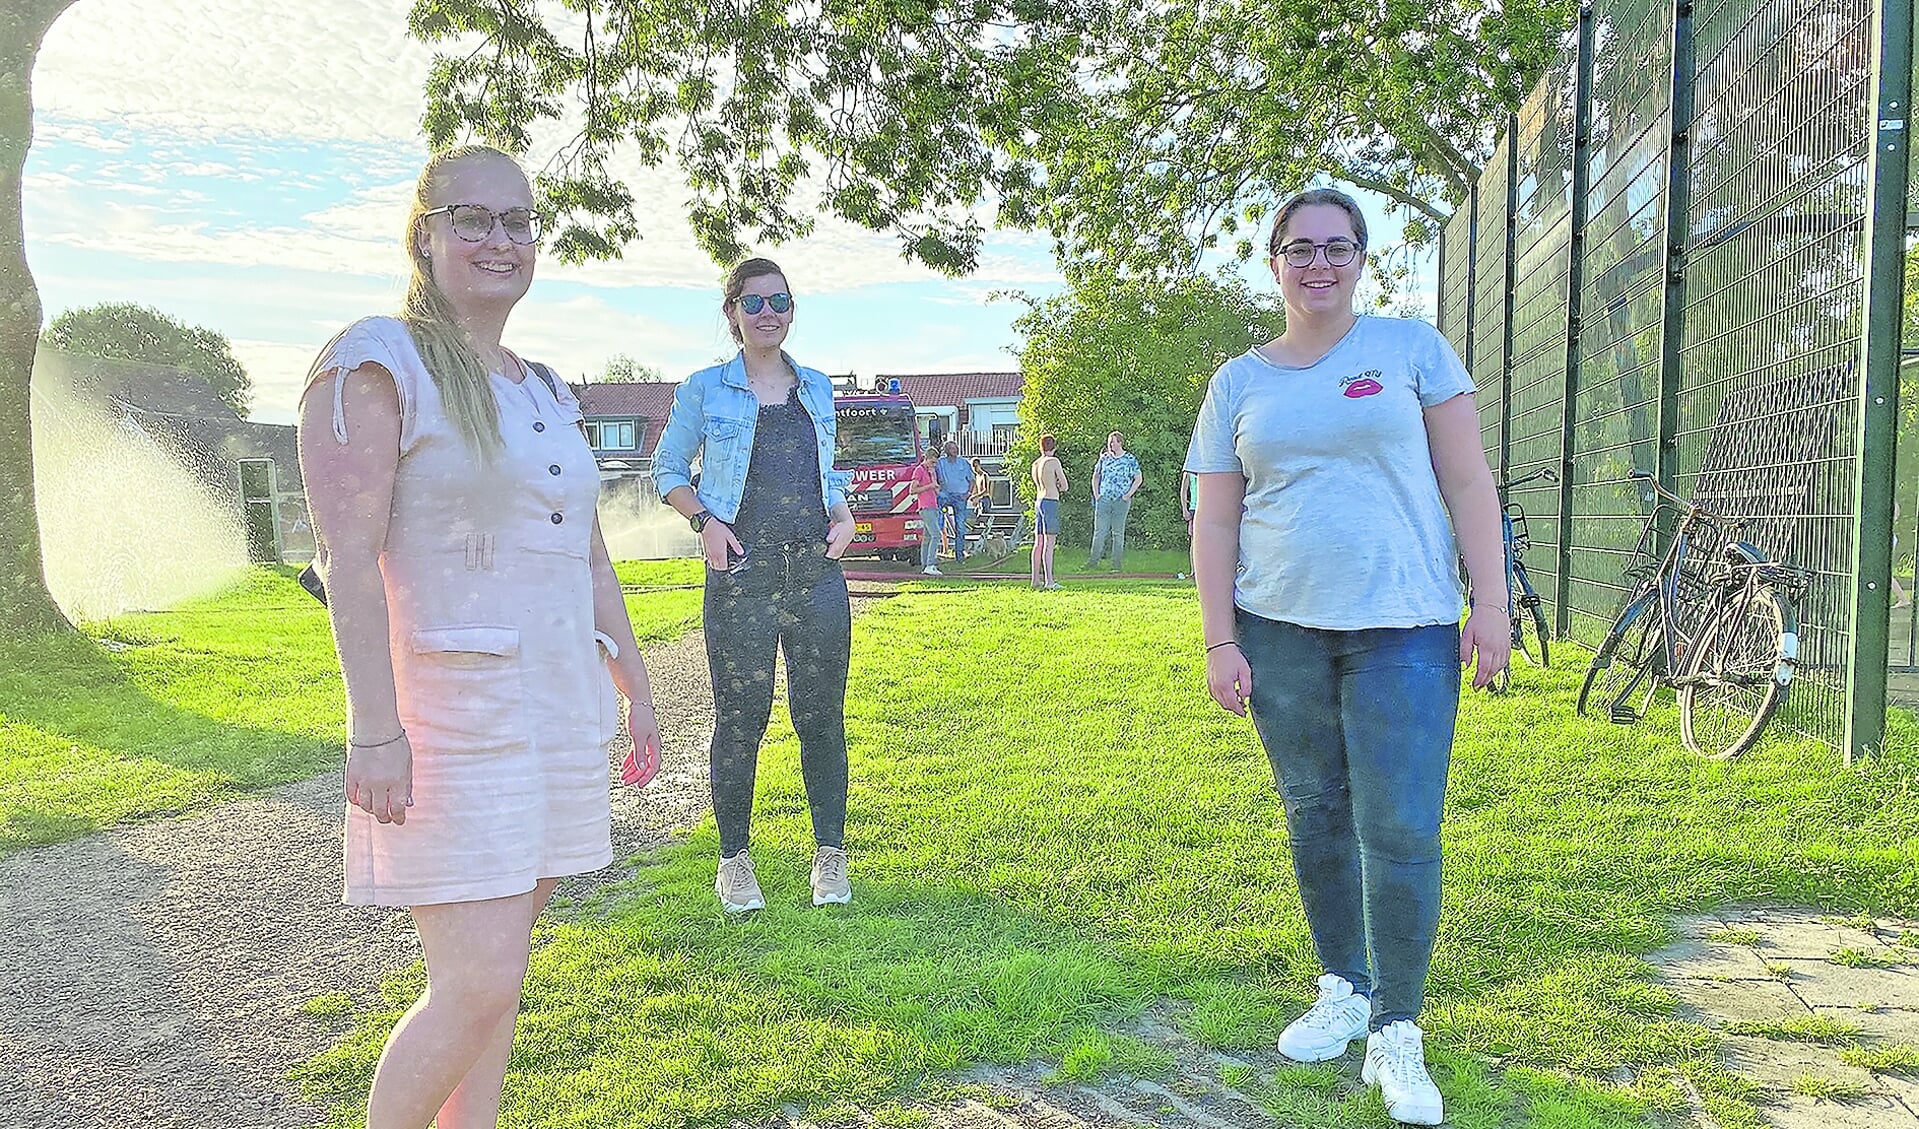 De meiden van VOM, van links naar rechts - Mandy, Katja en Samantha.